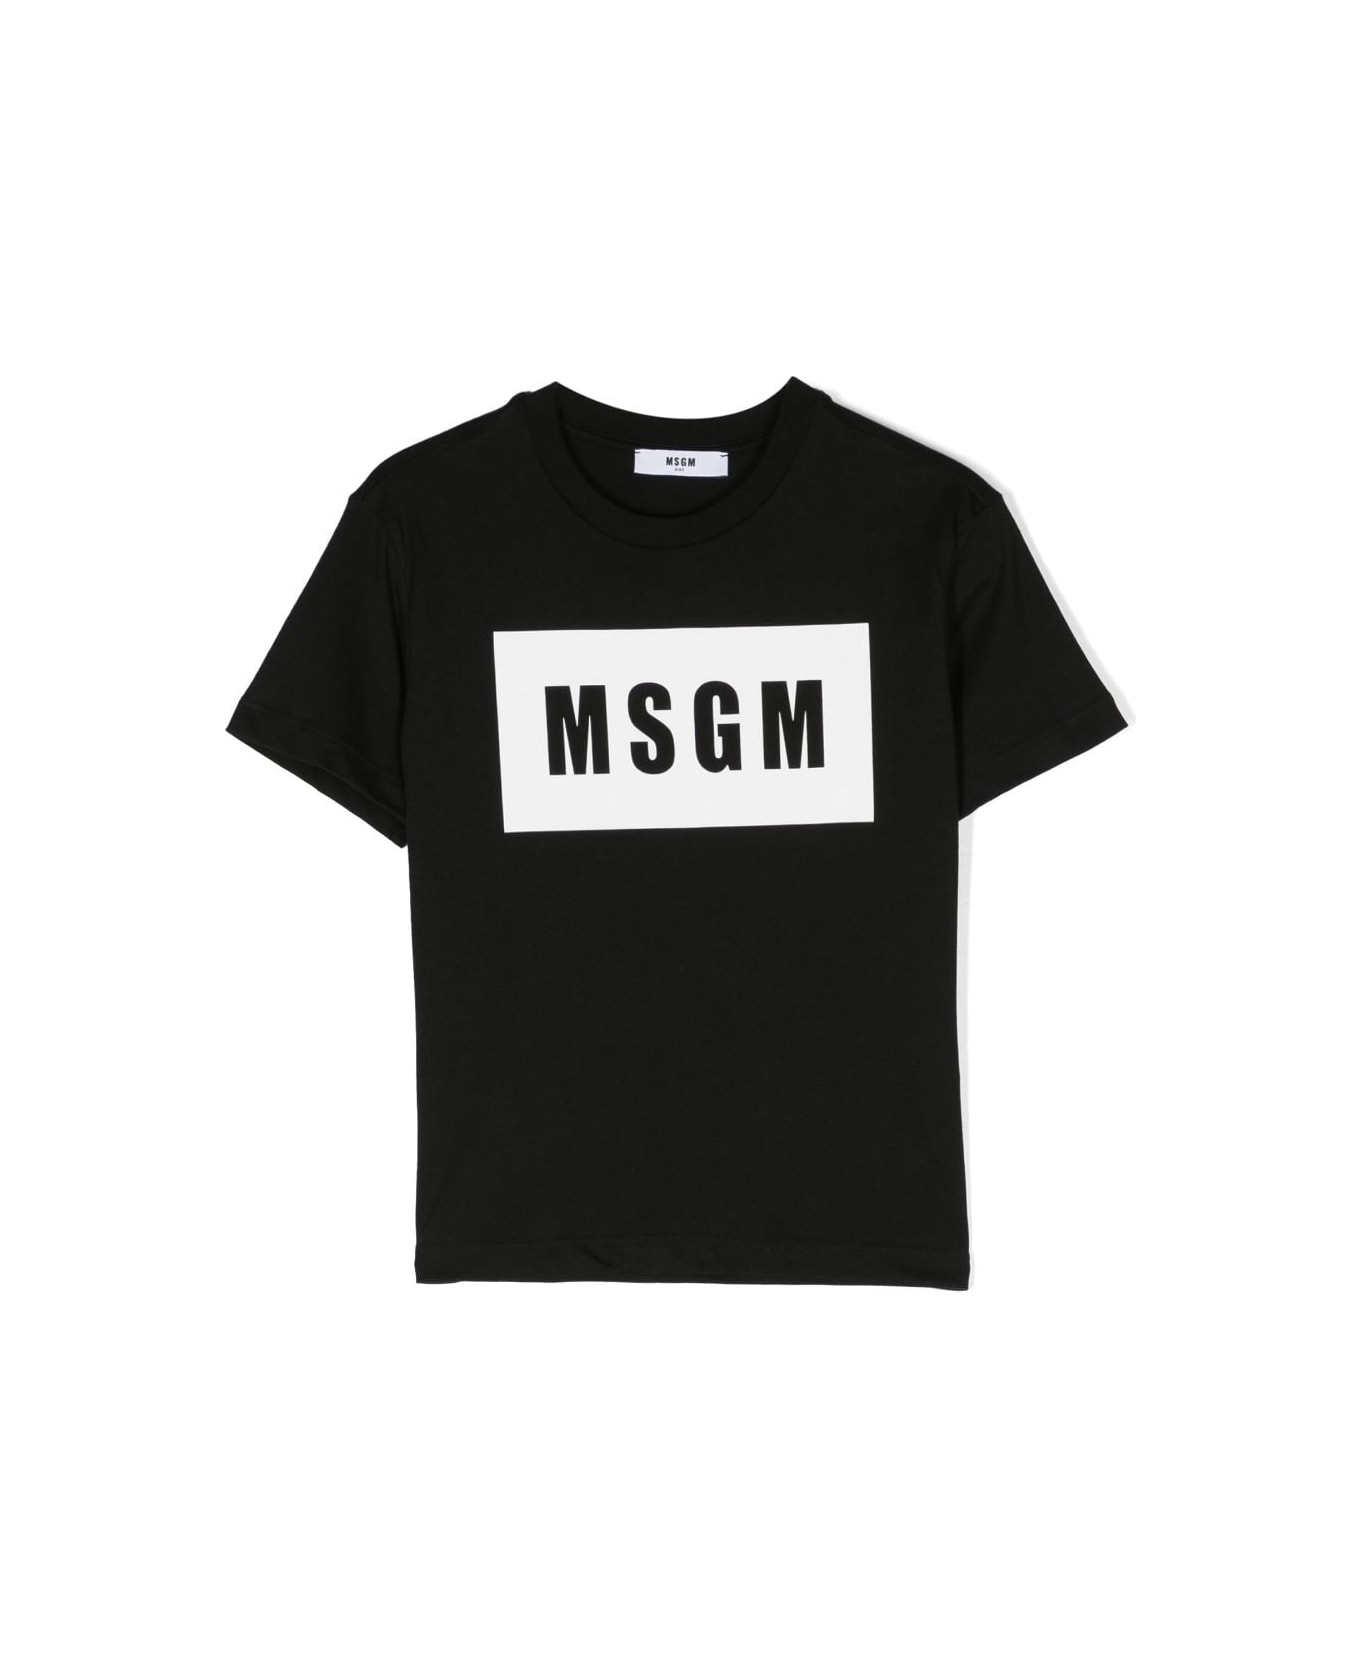 MSGM T-shirt Nera In Jersey Di Cotone Bambino - Nero